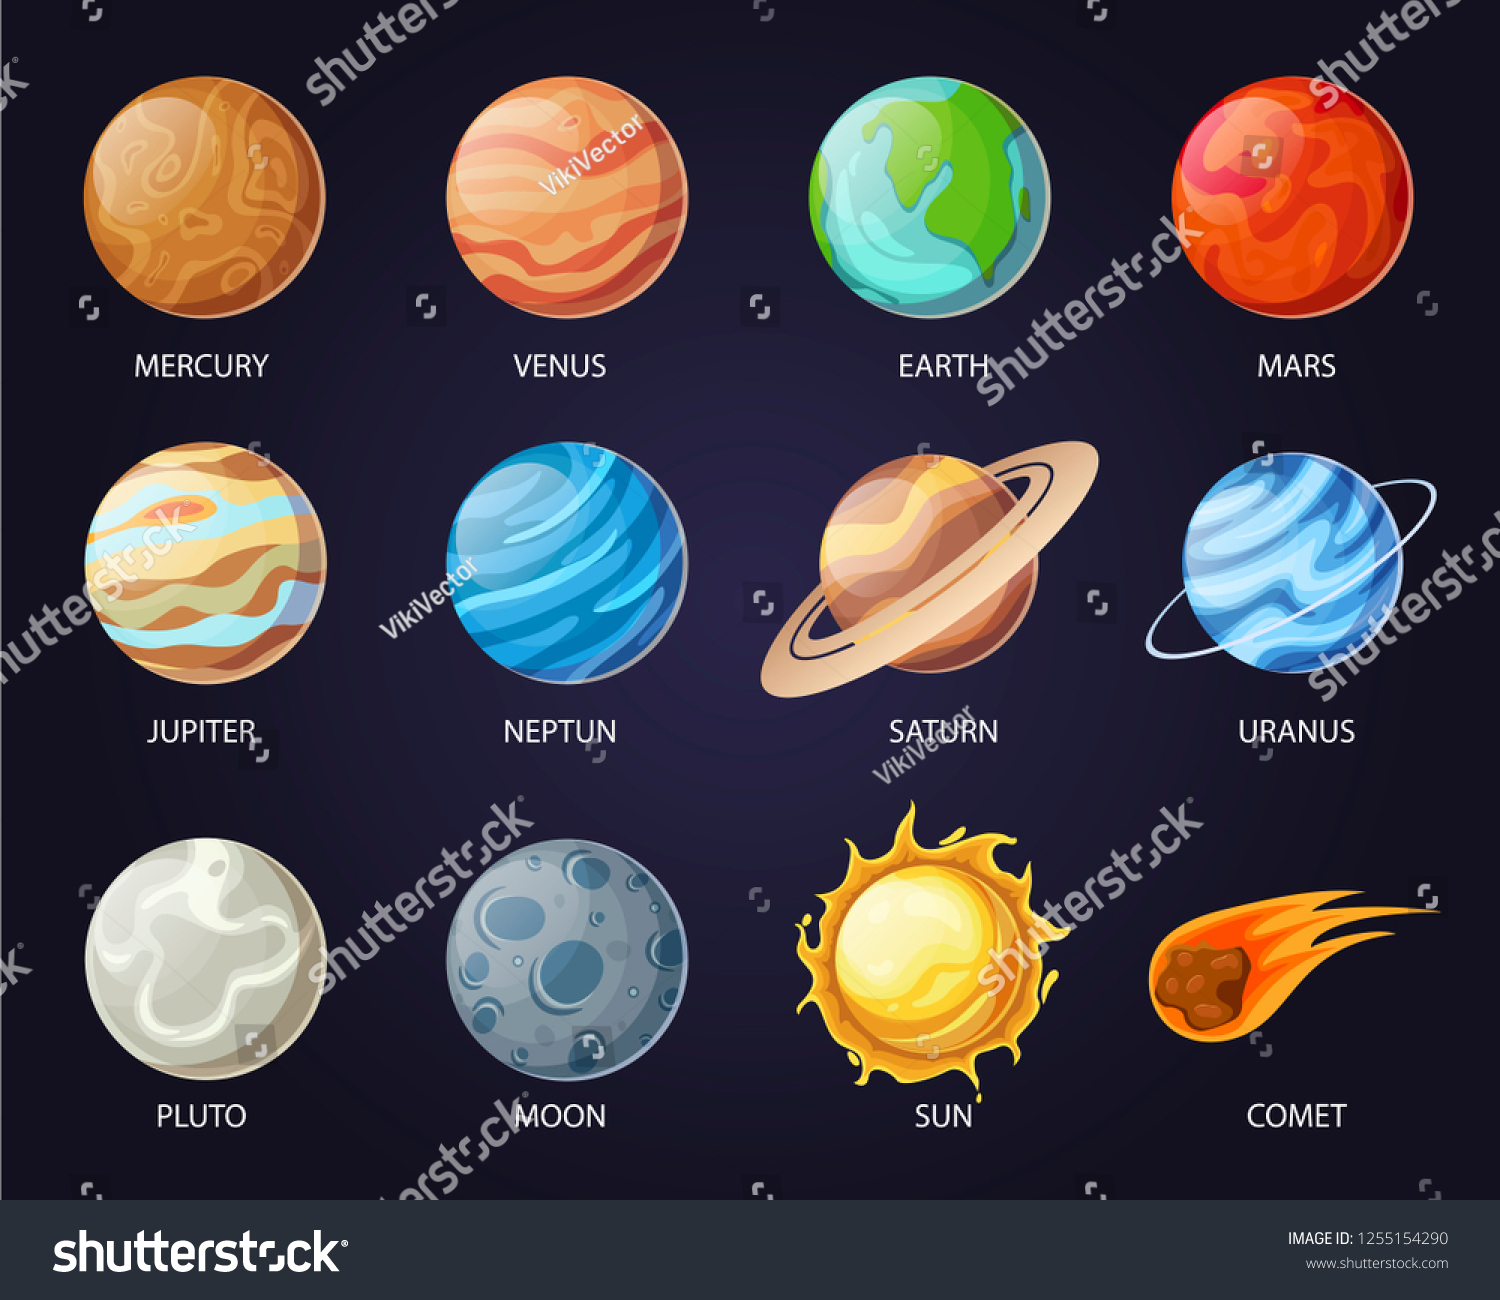 5,175 Pluto cartoon Images, Stock Photos & Vectors | Shutterstock